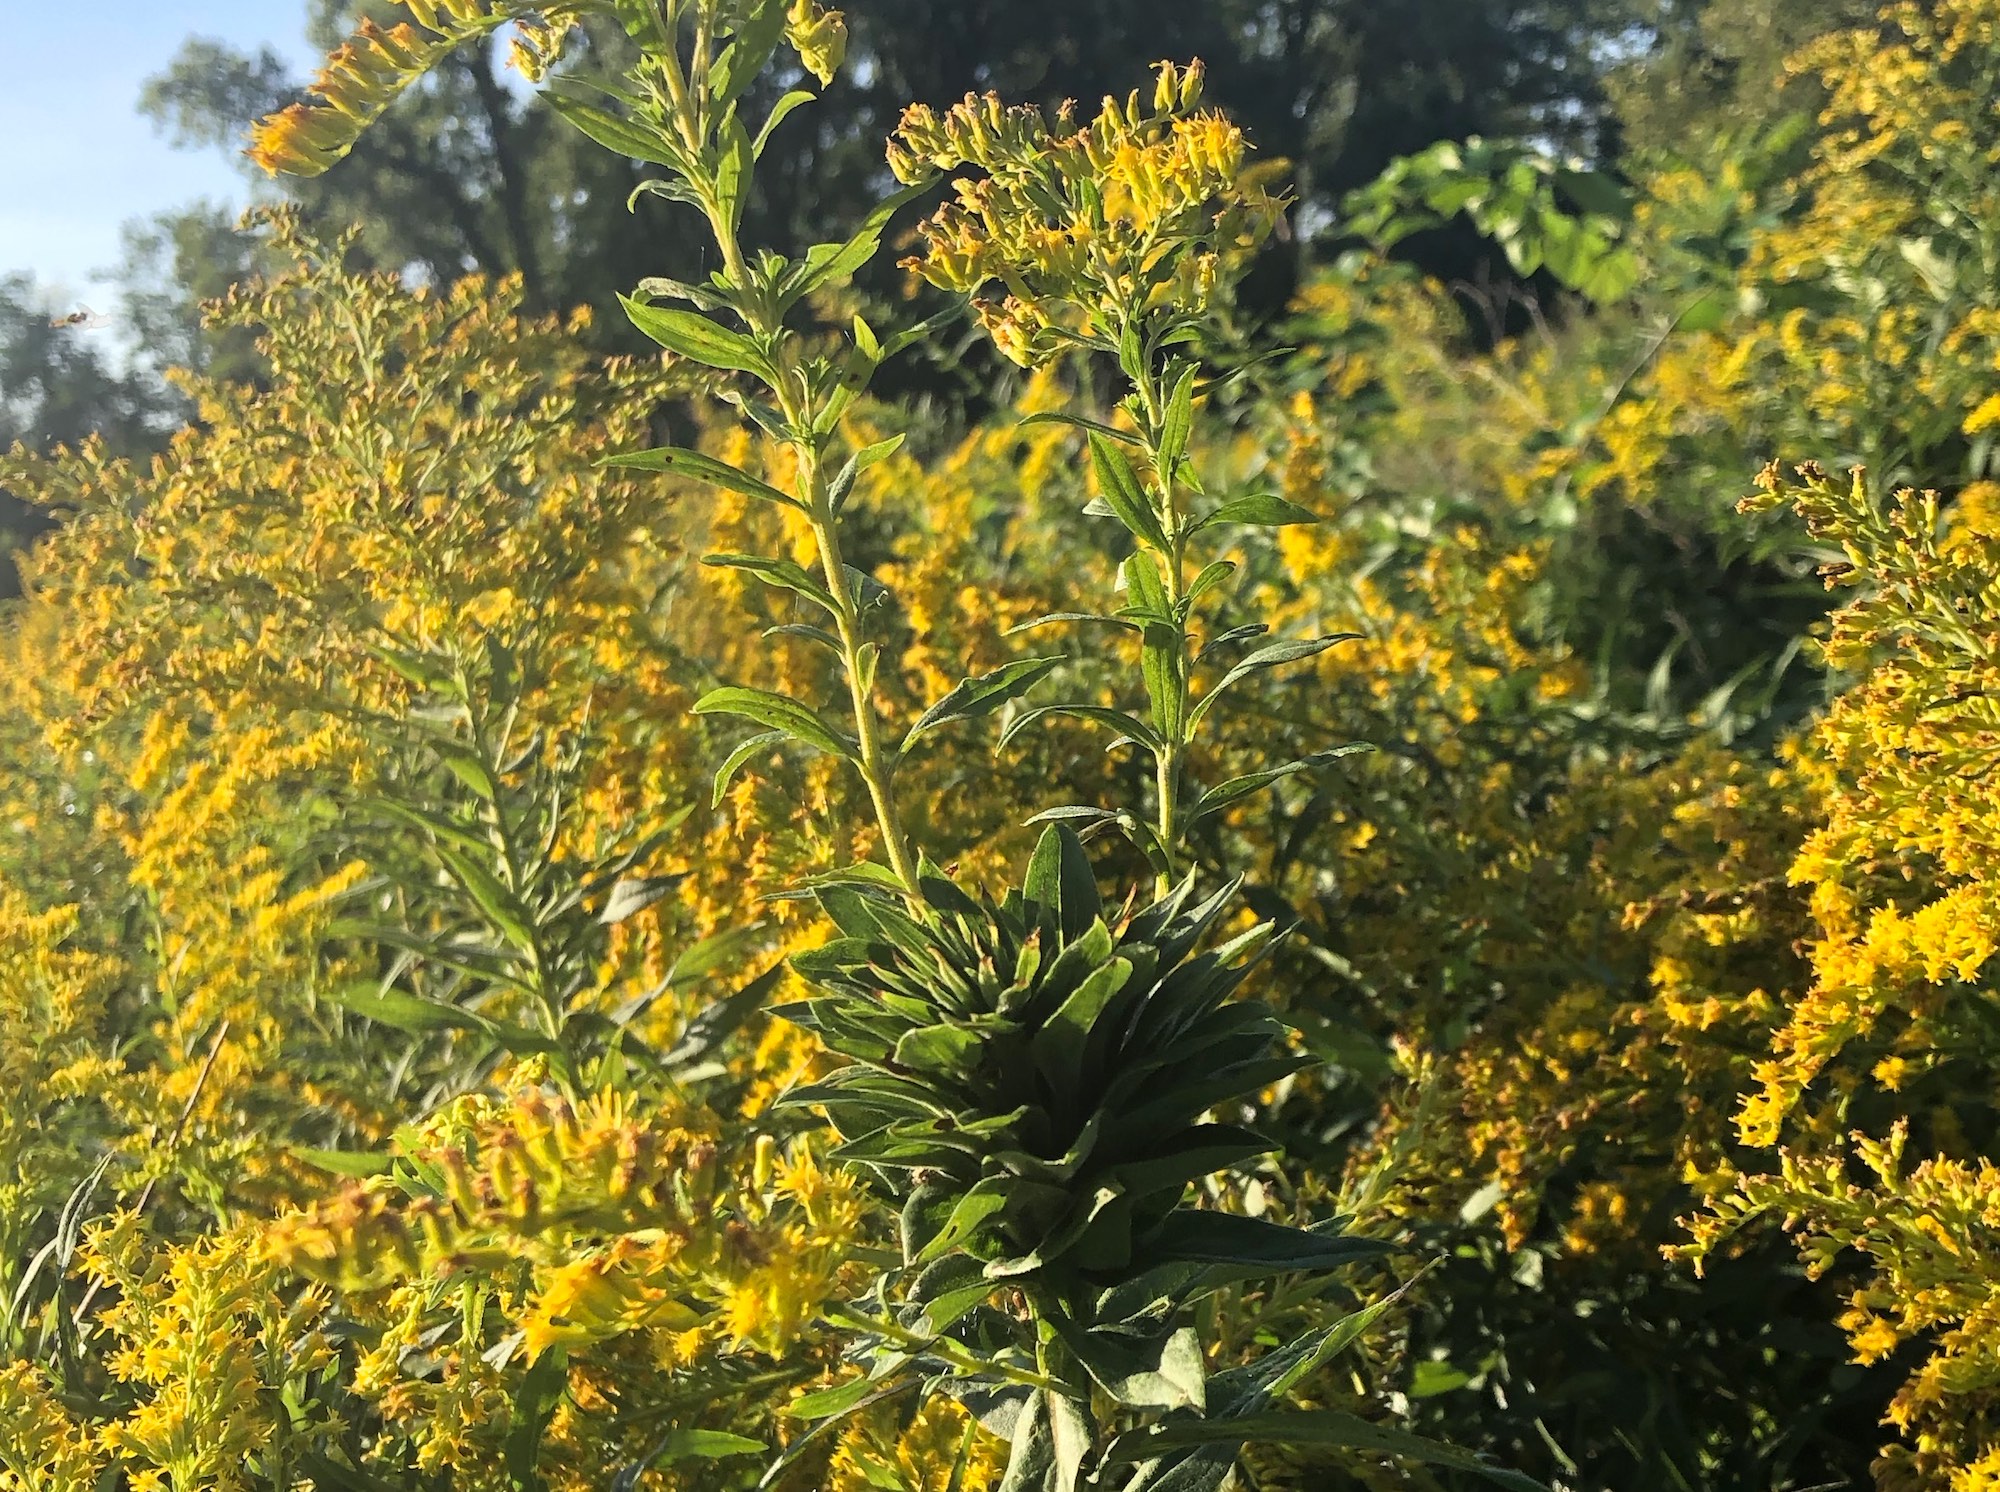 Goldenrod photo taken September 4, 2018 in UW Arboretum.